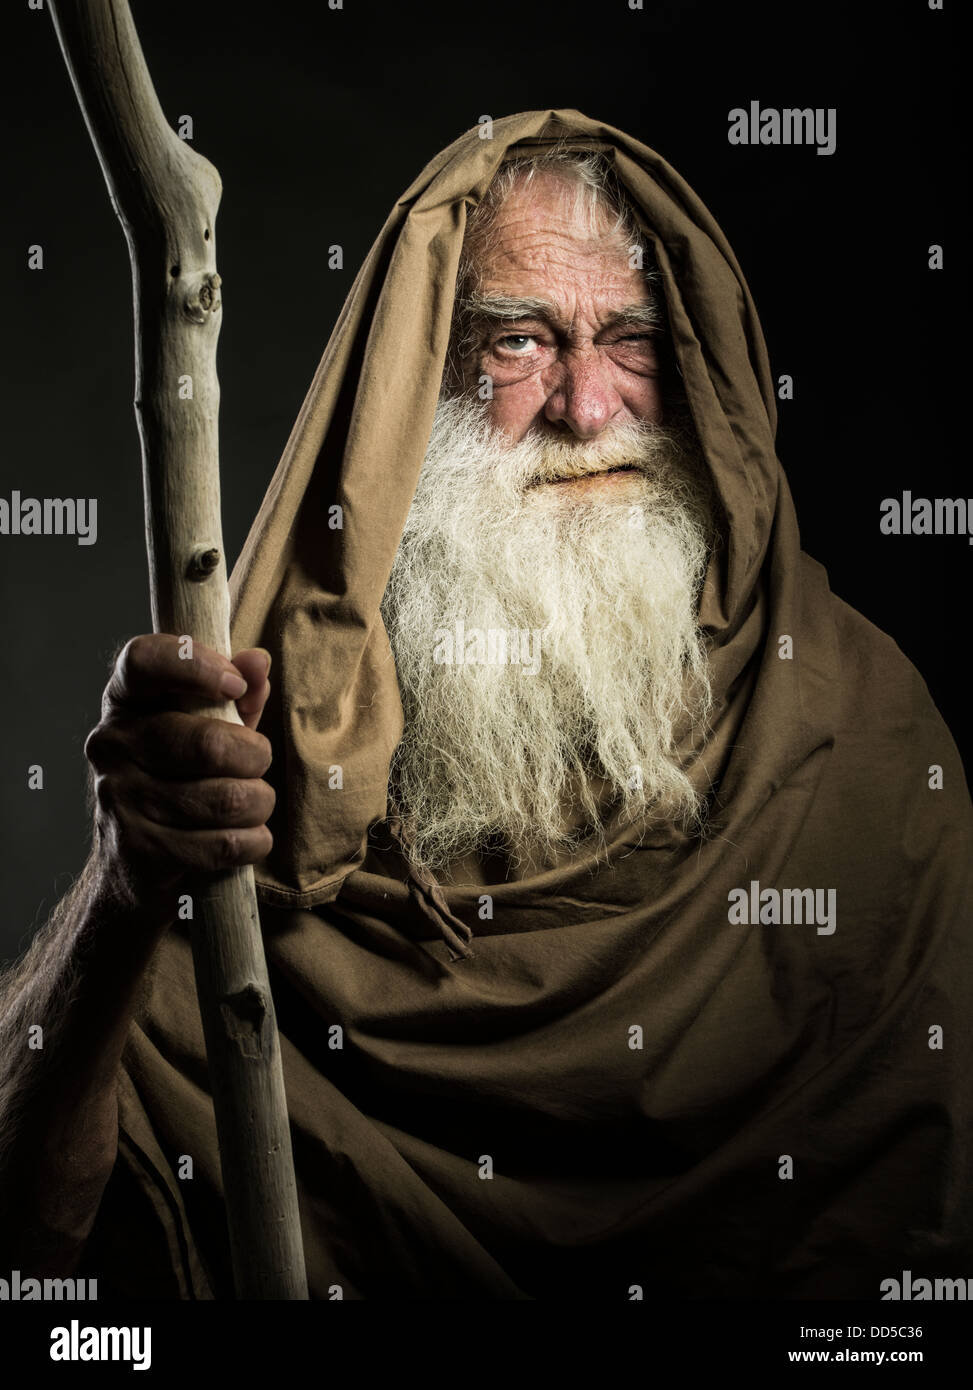 Uomo con barba bianca immagini e fotografie stock ad alta risoluzione -  Alamy